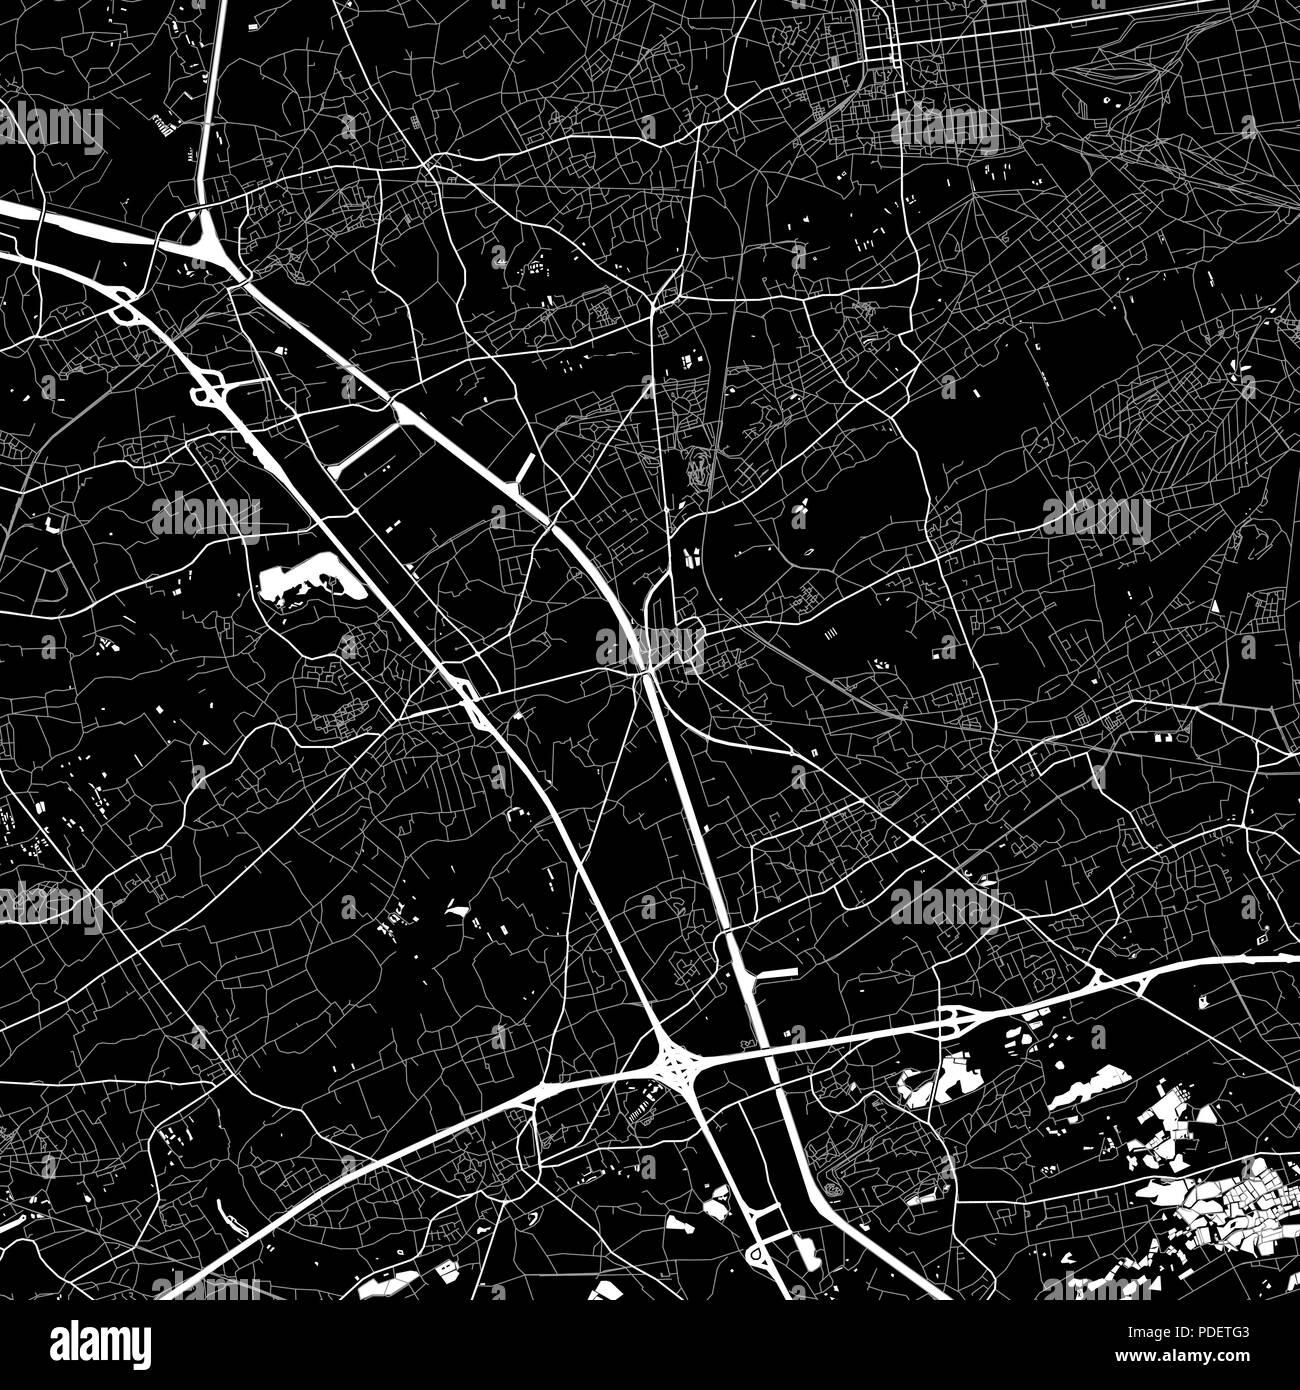 Mapa de la zona de Beringen, Bélgica. Fondo oscuro versión para infografía y marketing. Este mapa de la región de Flandes, Beringen, contiene las calles, waterw Ilustración del Vector